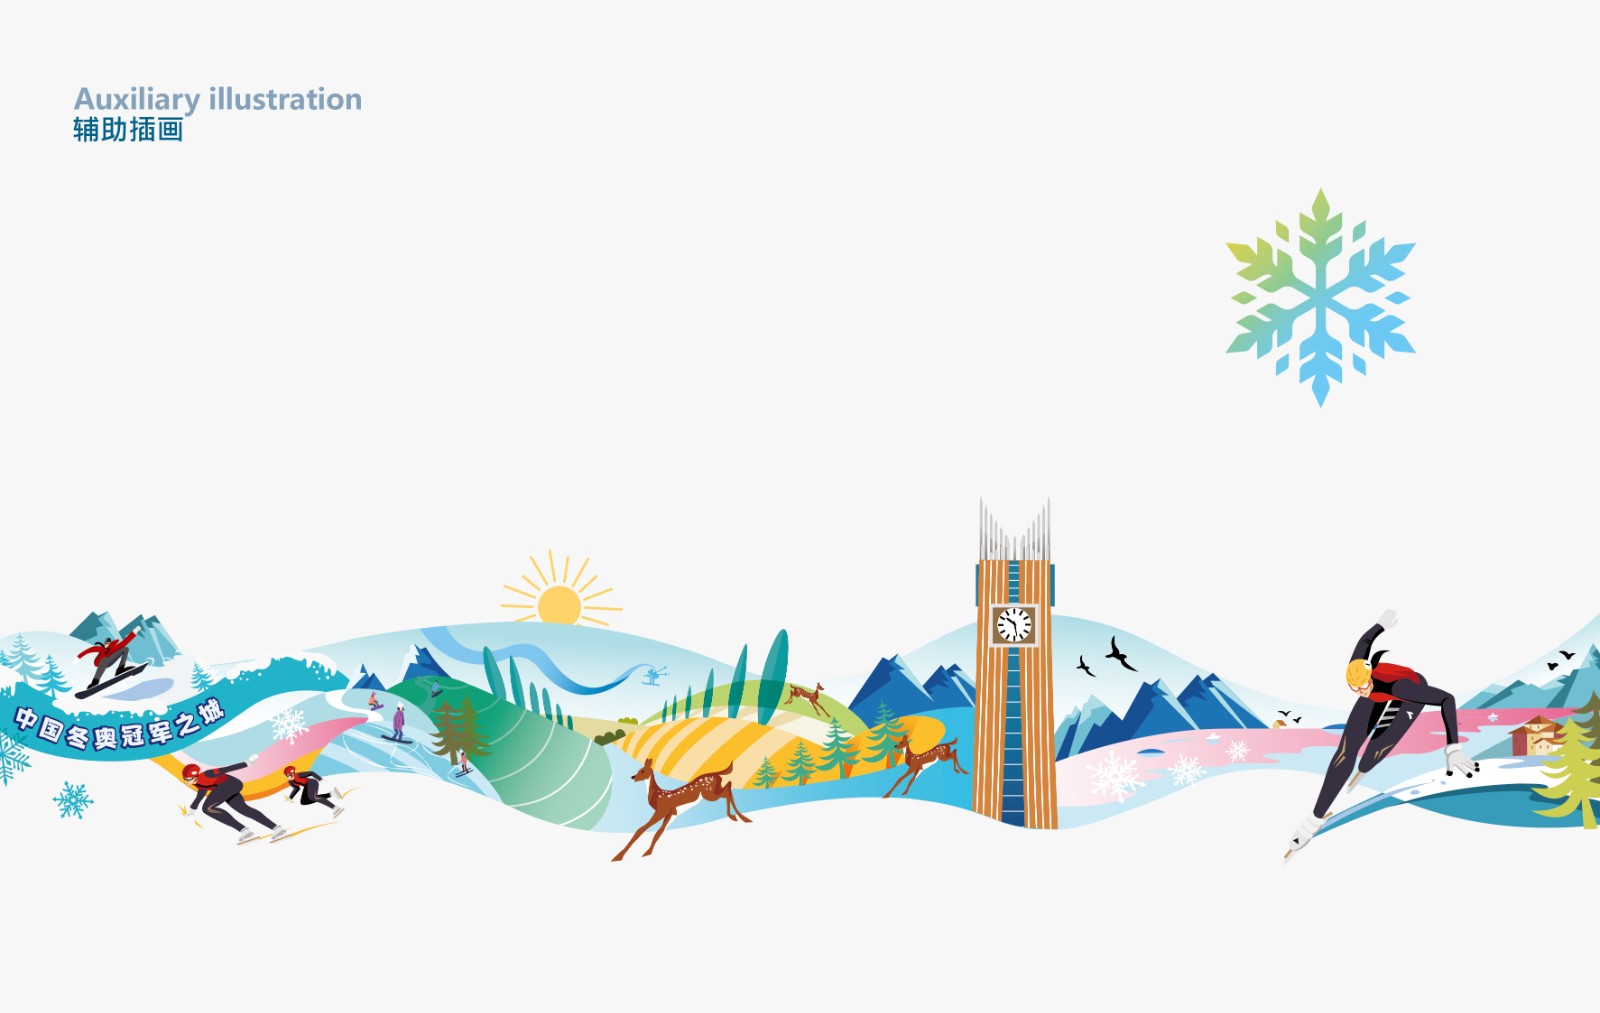 冬奧冠軍城市宣傳輔助插畫設計